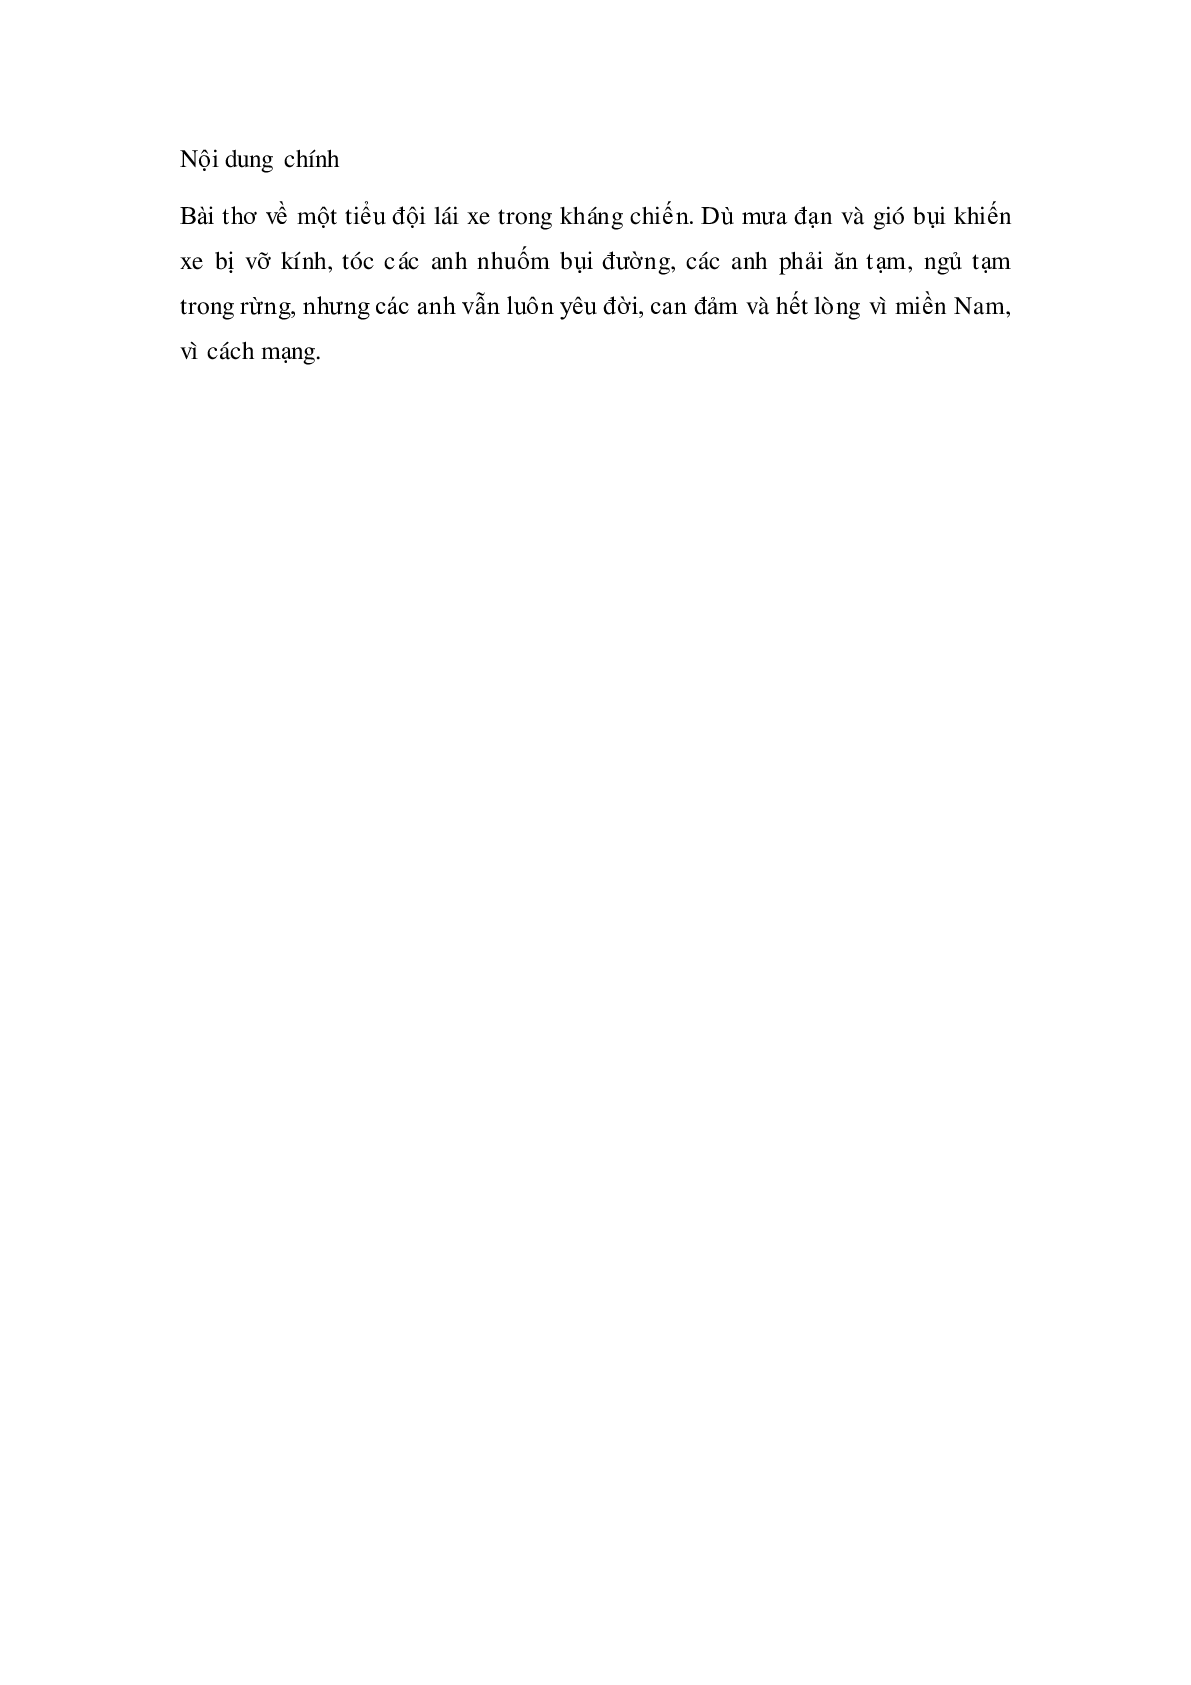 Soạn Tiếng Việt lớp 4: Tập đọc: Bài thơ về tiểu đội xe không kính mới nhất (trang 2)